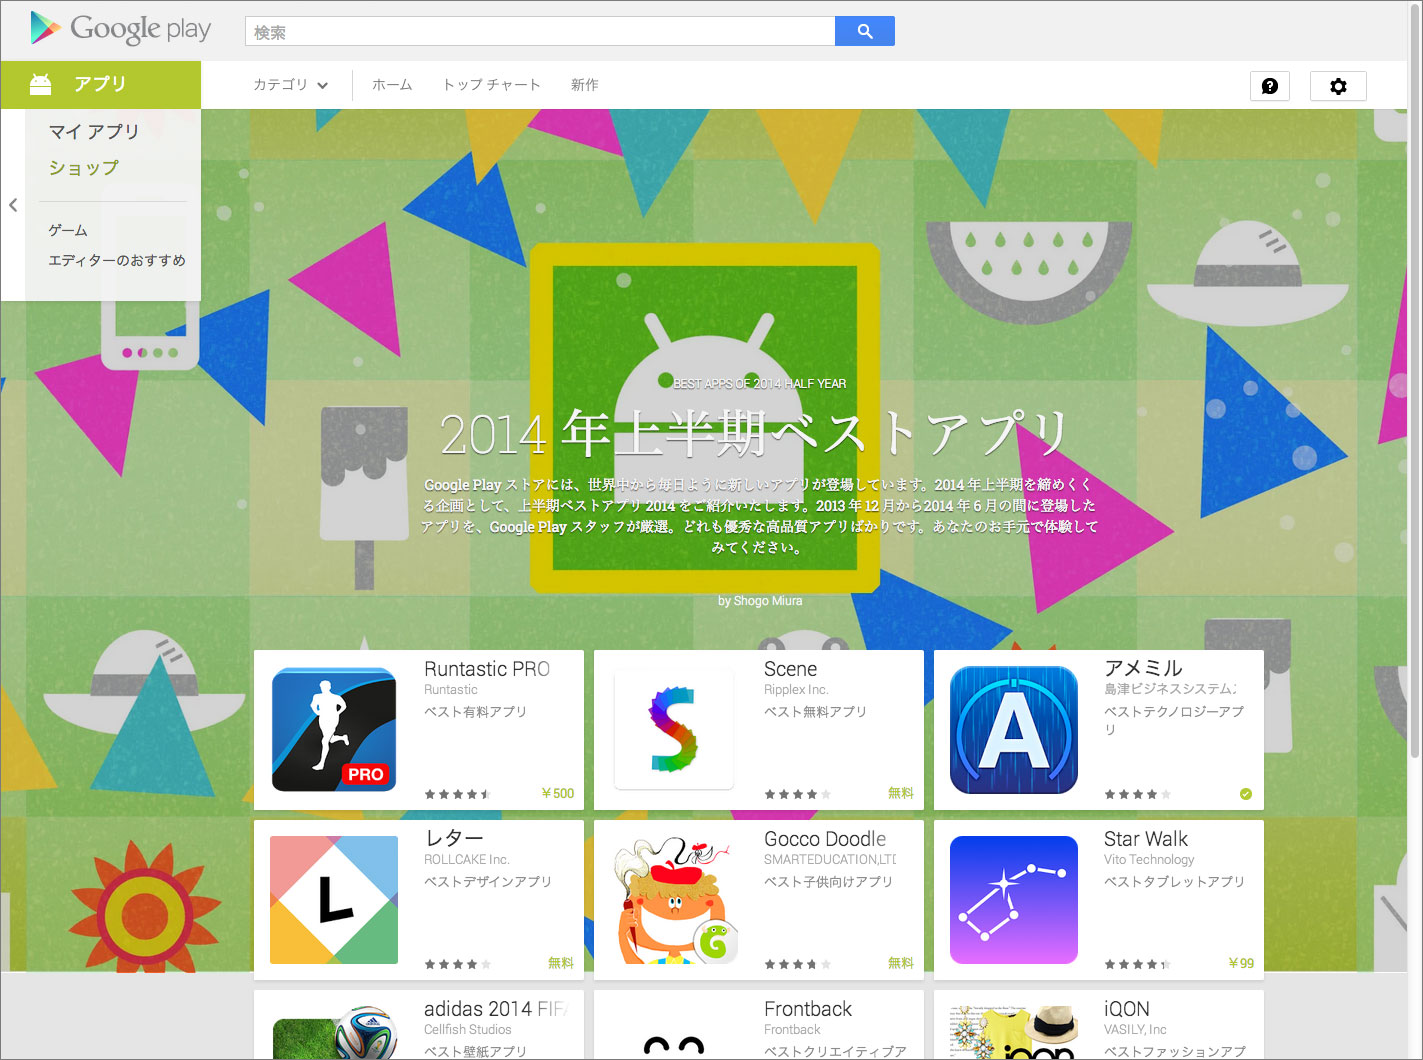 Google Play 2014年上半期ベストアプリに「アメミル」が選出されました